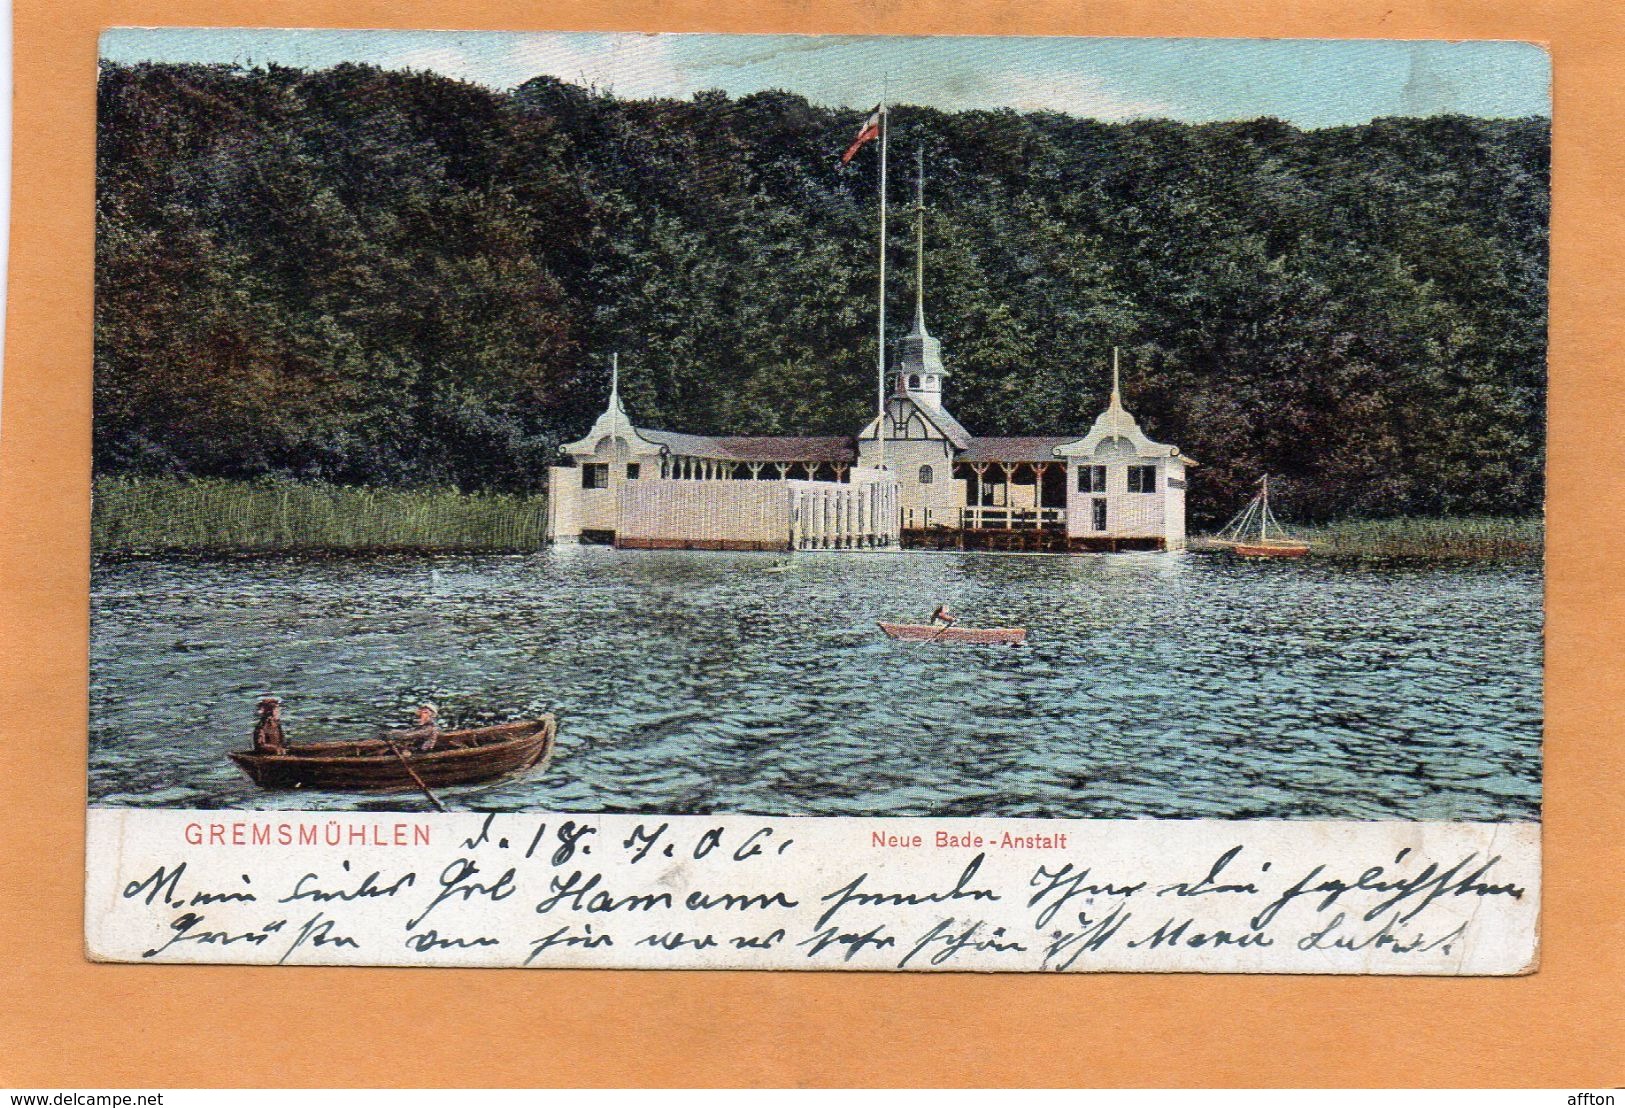 Gremsmuhlen Malente Germany 1906 Postcard - Malente-Gremsmuehlen